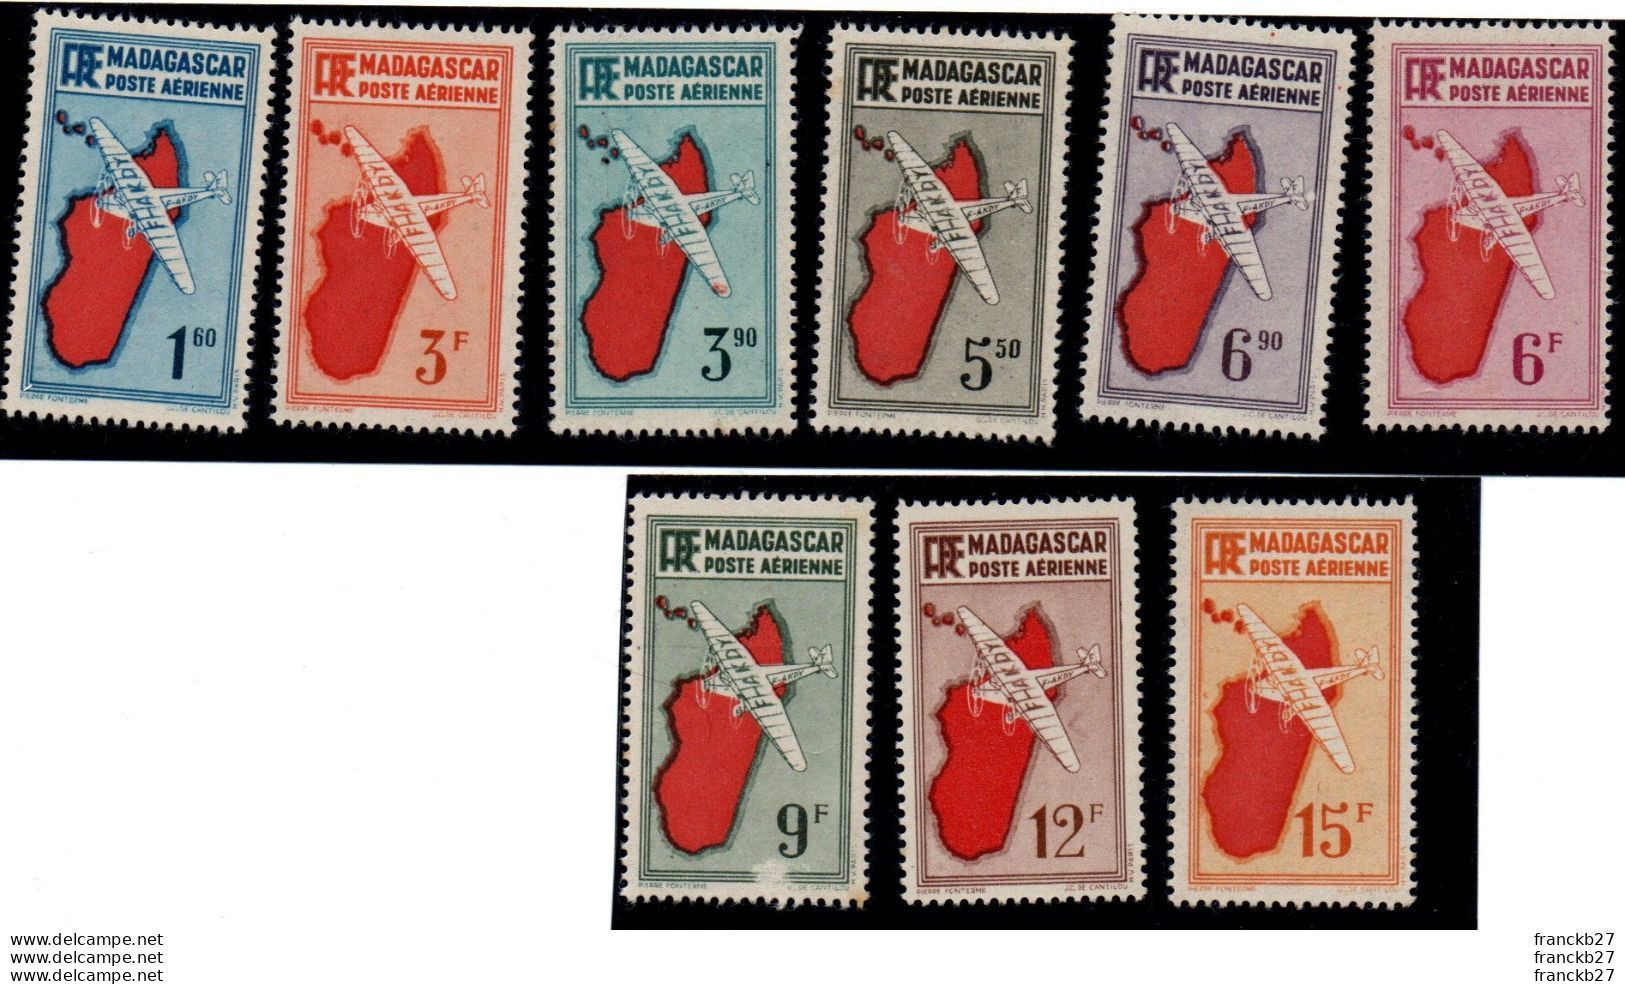 Madagascar - Poste Aérienne - 9 Timbres - 1.6 - 3 3.9 - 5.5 - 6.9 - 6 - 9 - 12 - 15 F - Ongebruikt